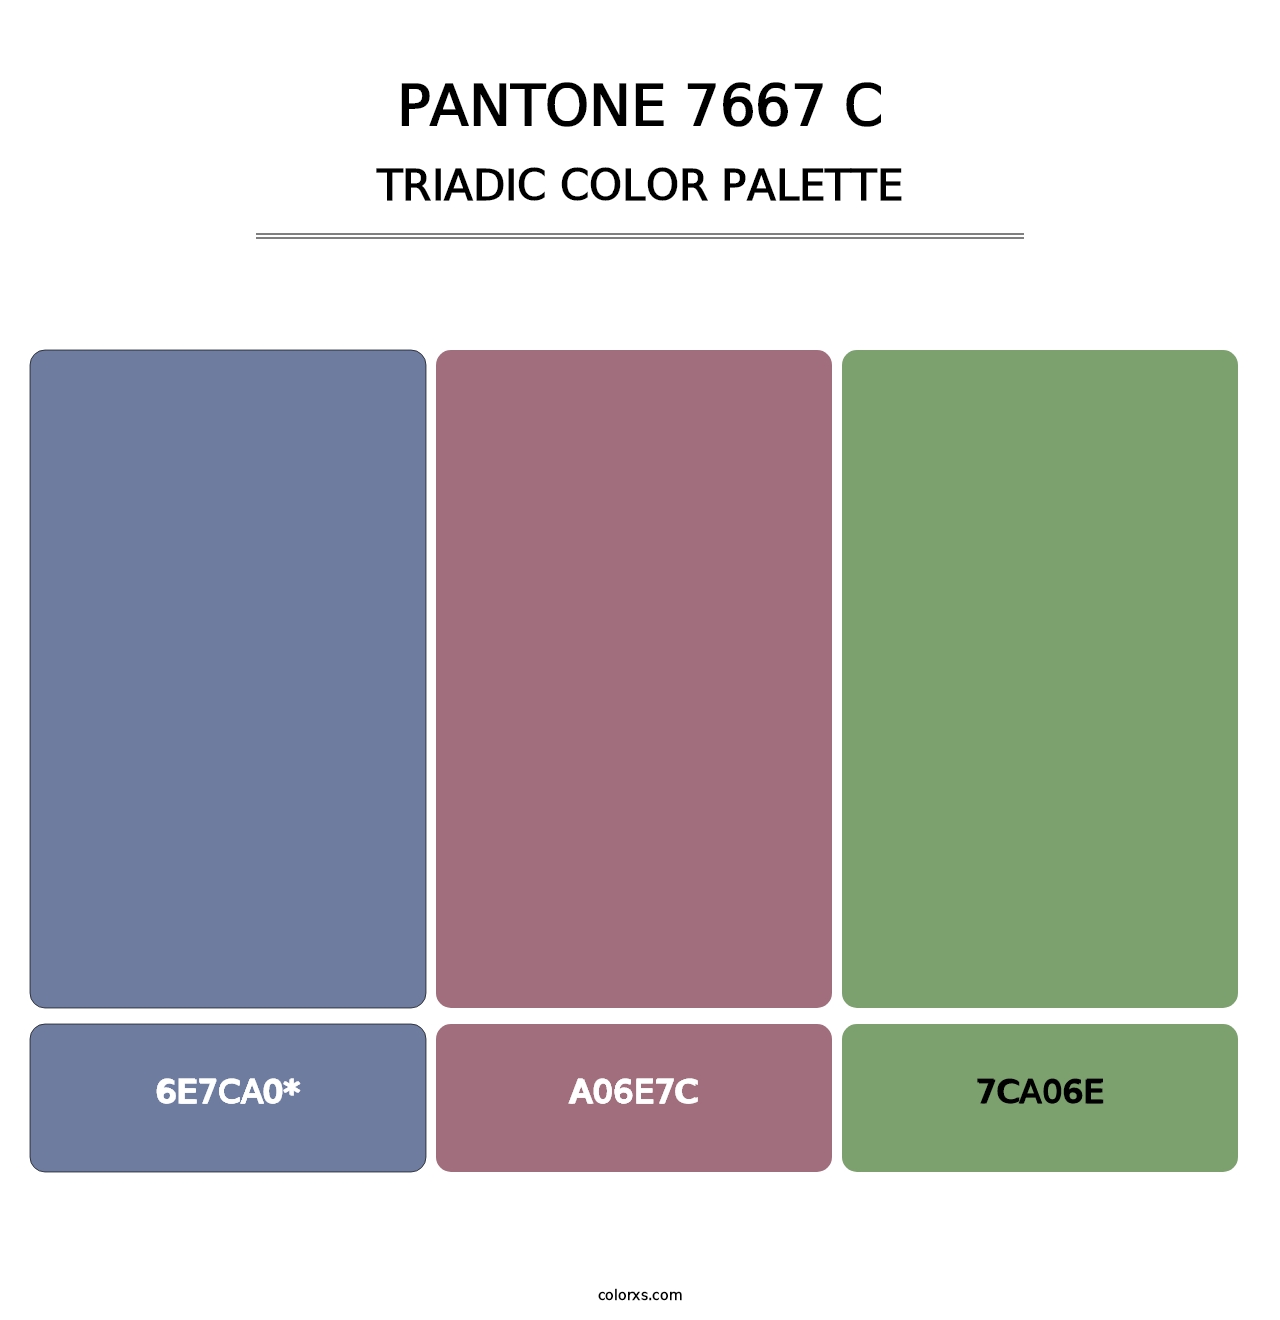 PANTONE 7667 C - Triadic Color Palette